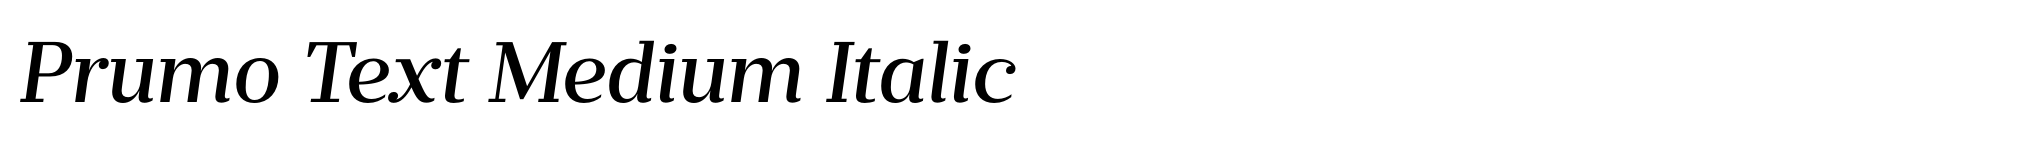 Prumo Text Medium Italic image